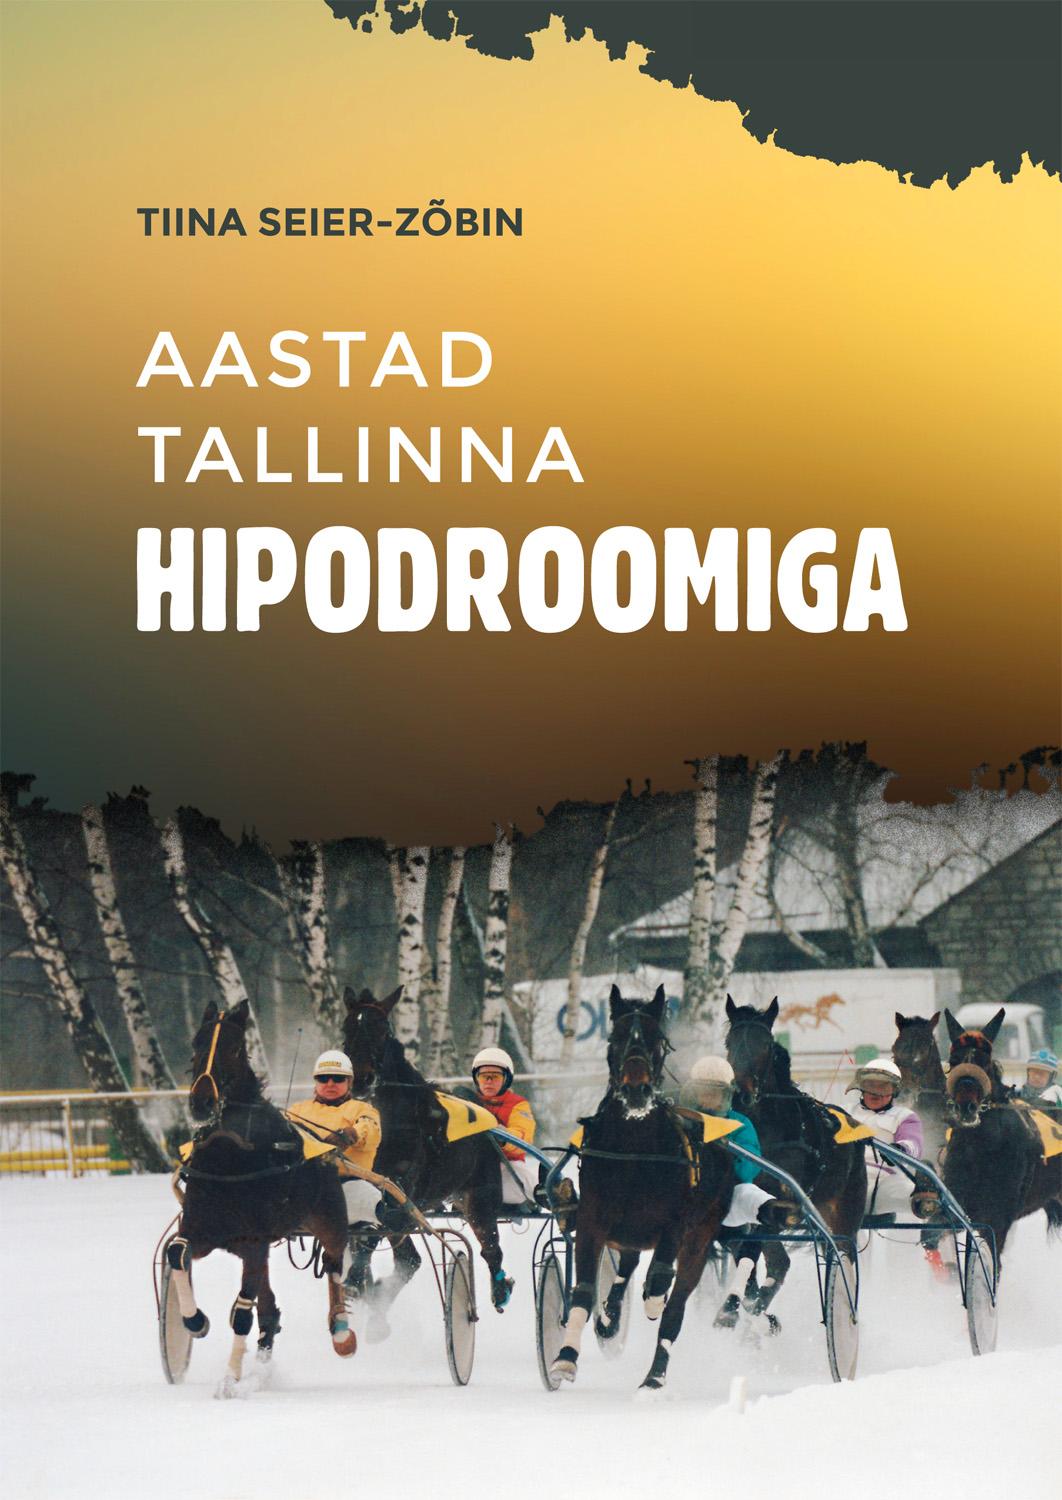 Aastad Tallinna Hipodroomiga